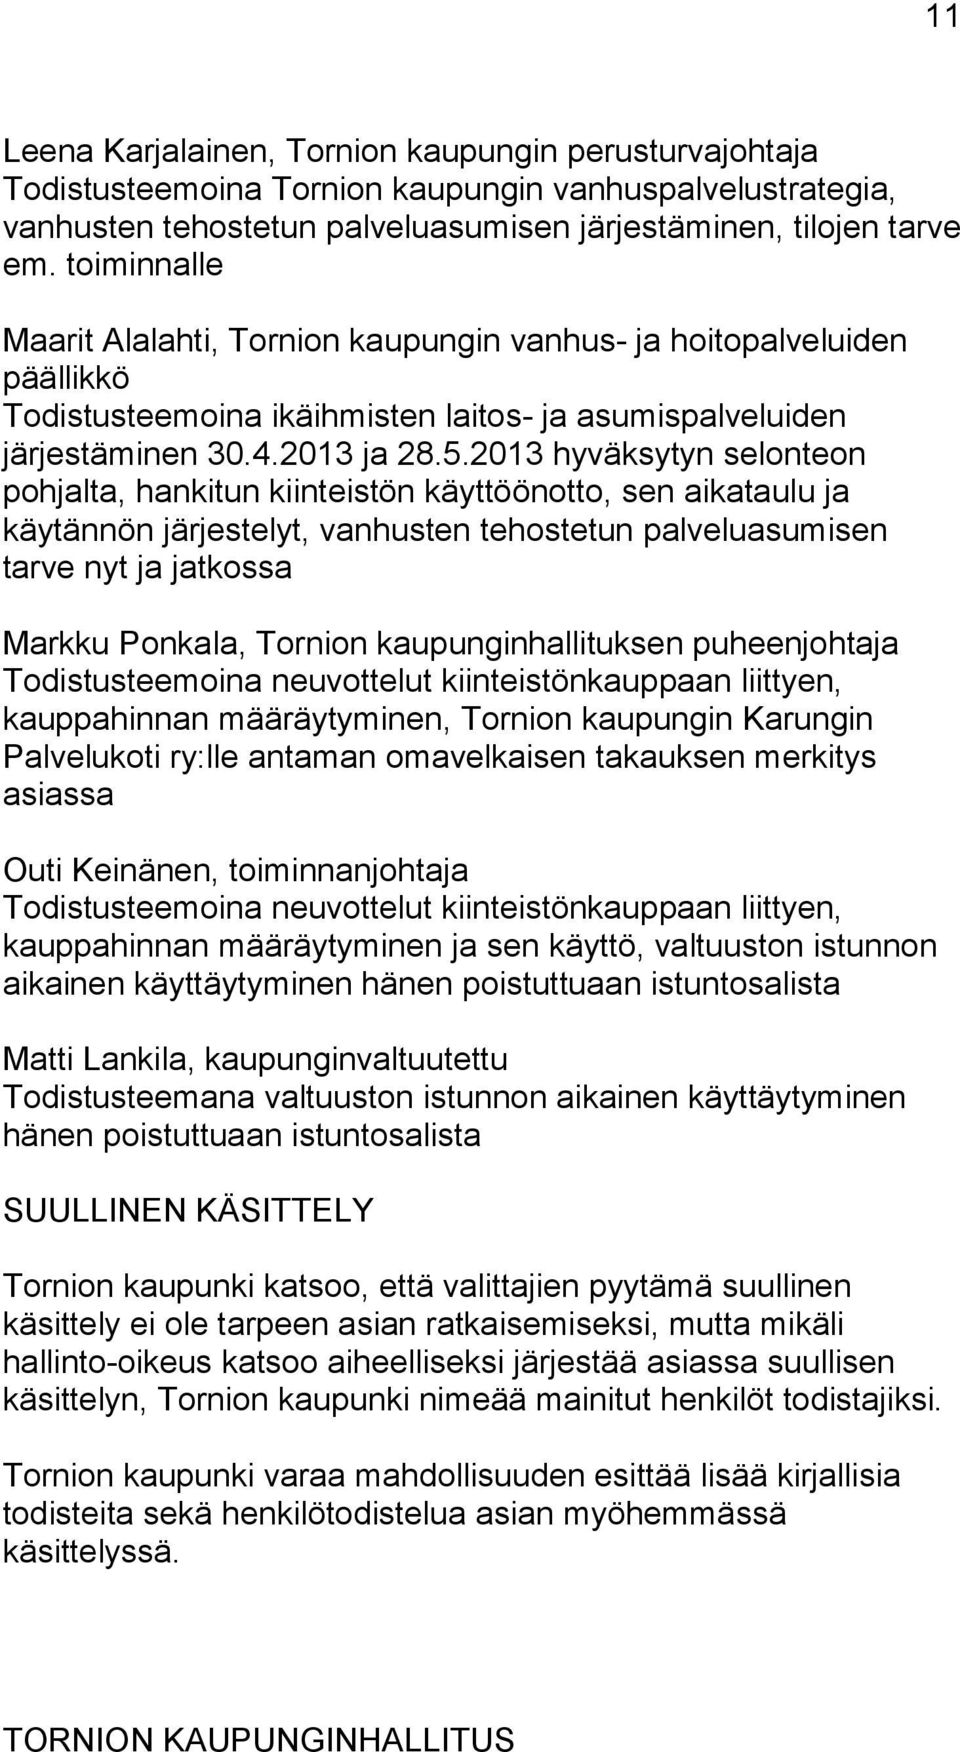 2013 hyväksytyn selonteon pohjalta, hankitun kiinteistön käyttöönotto, sen aikataulu ja käytännön järjestelyt, vanhusten tehostetun palveluasumisen tarve nyt ja jatkossa Markku Ponkala, Tornion